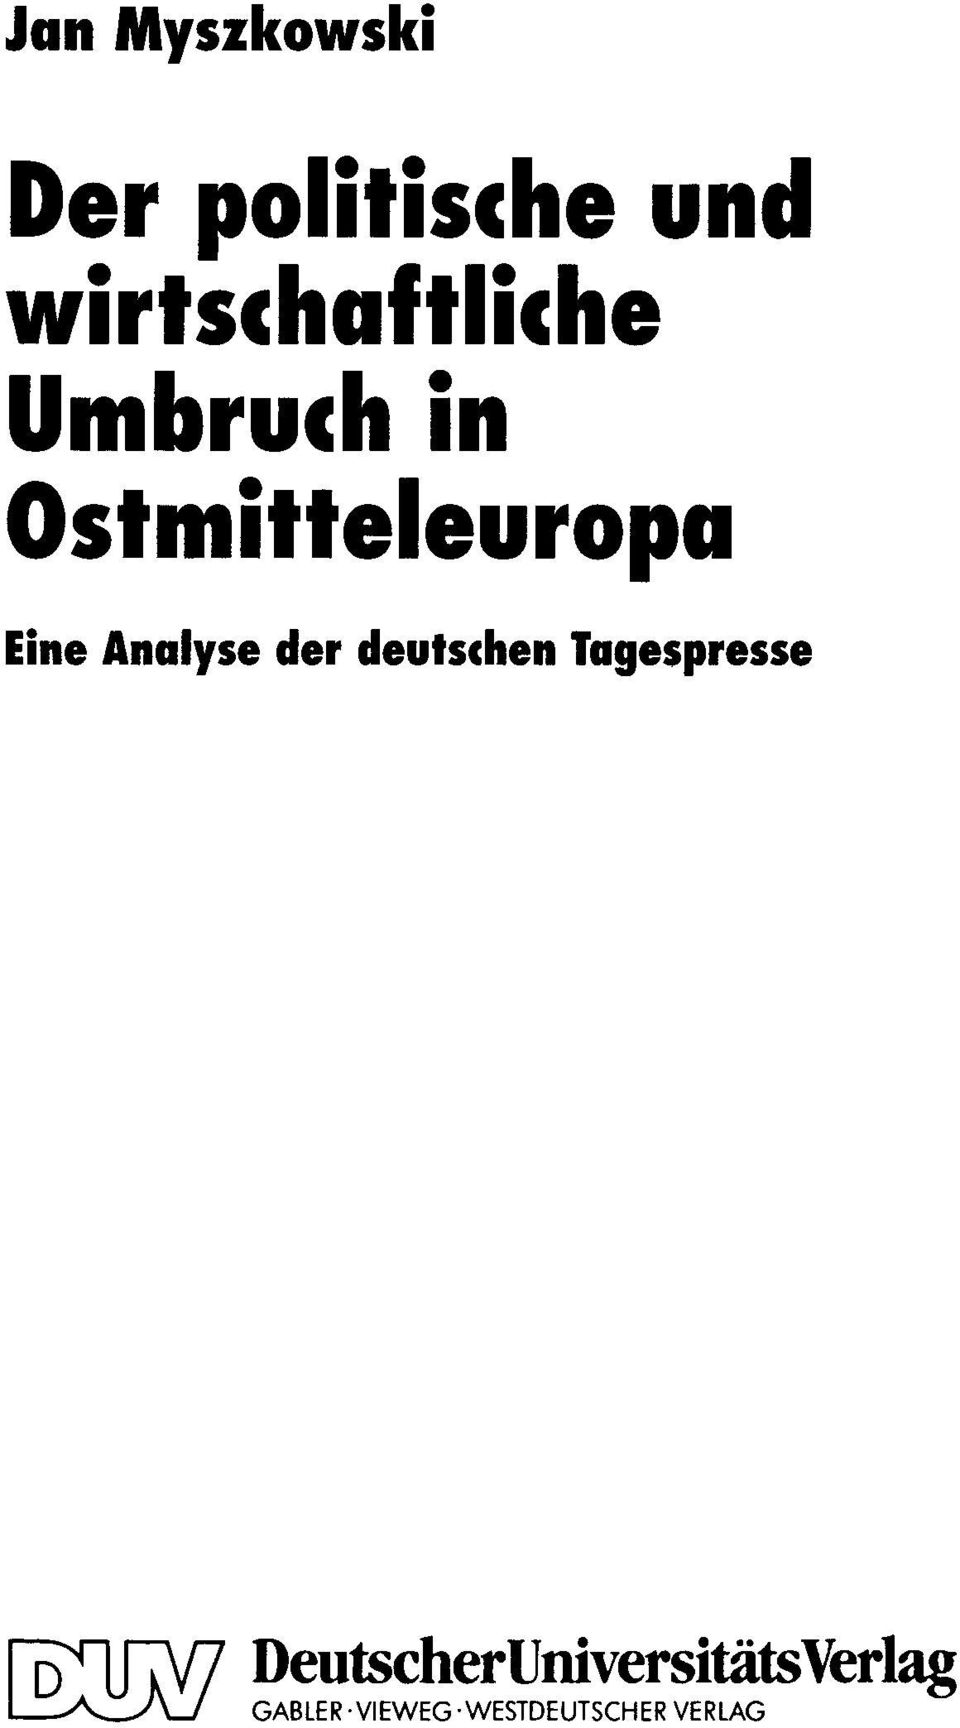 Analyse der deutschen Tagespresse f"[)'fl1.